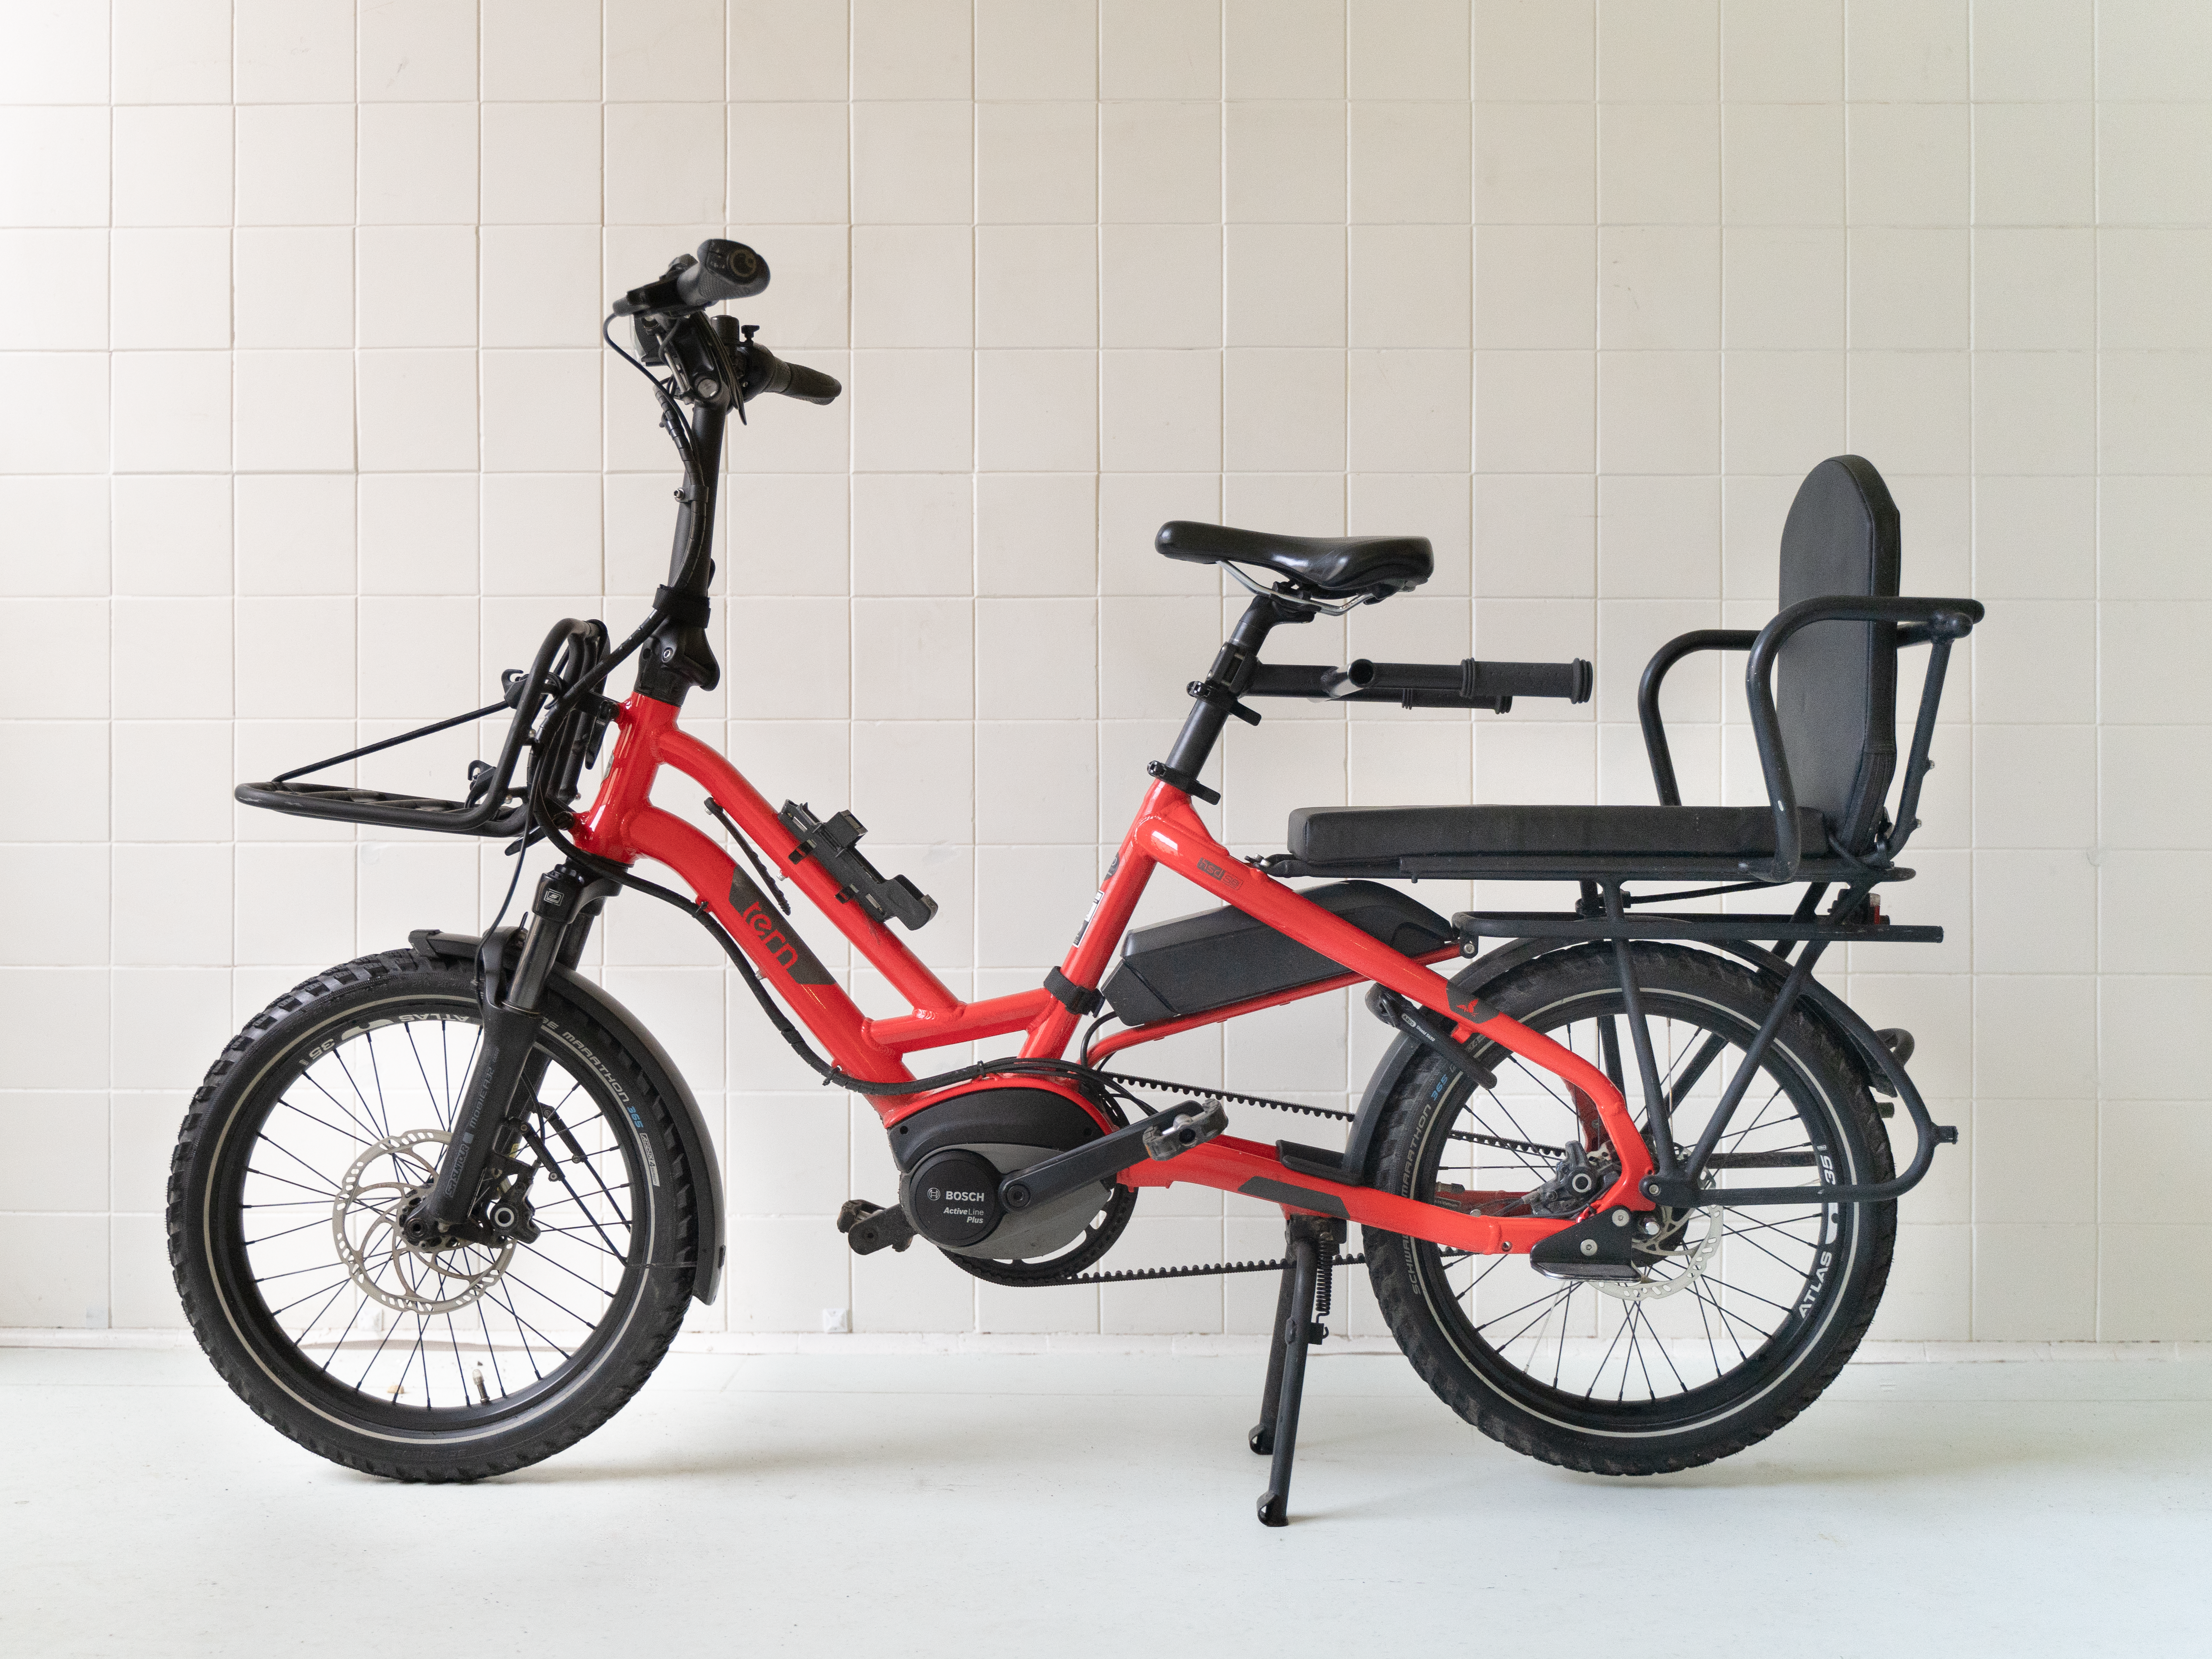 Bildet er av en rød Elsykkel som heter Tern HSD. Det er en liten sykkel med 20' hjul og plass til en stor passasjer